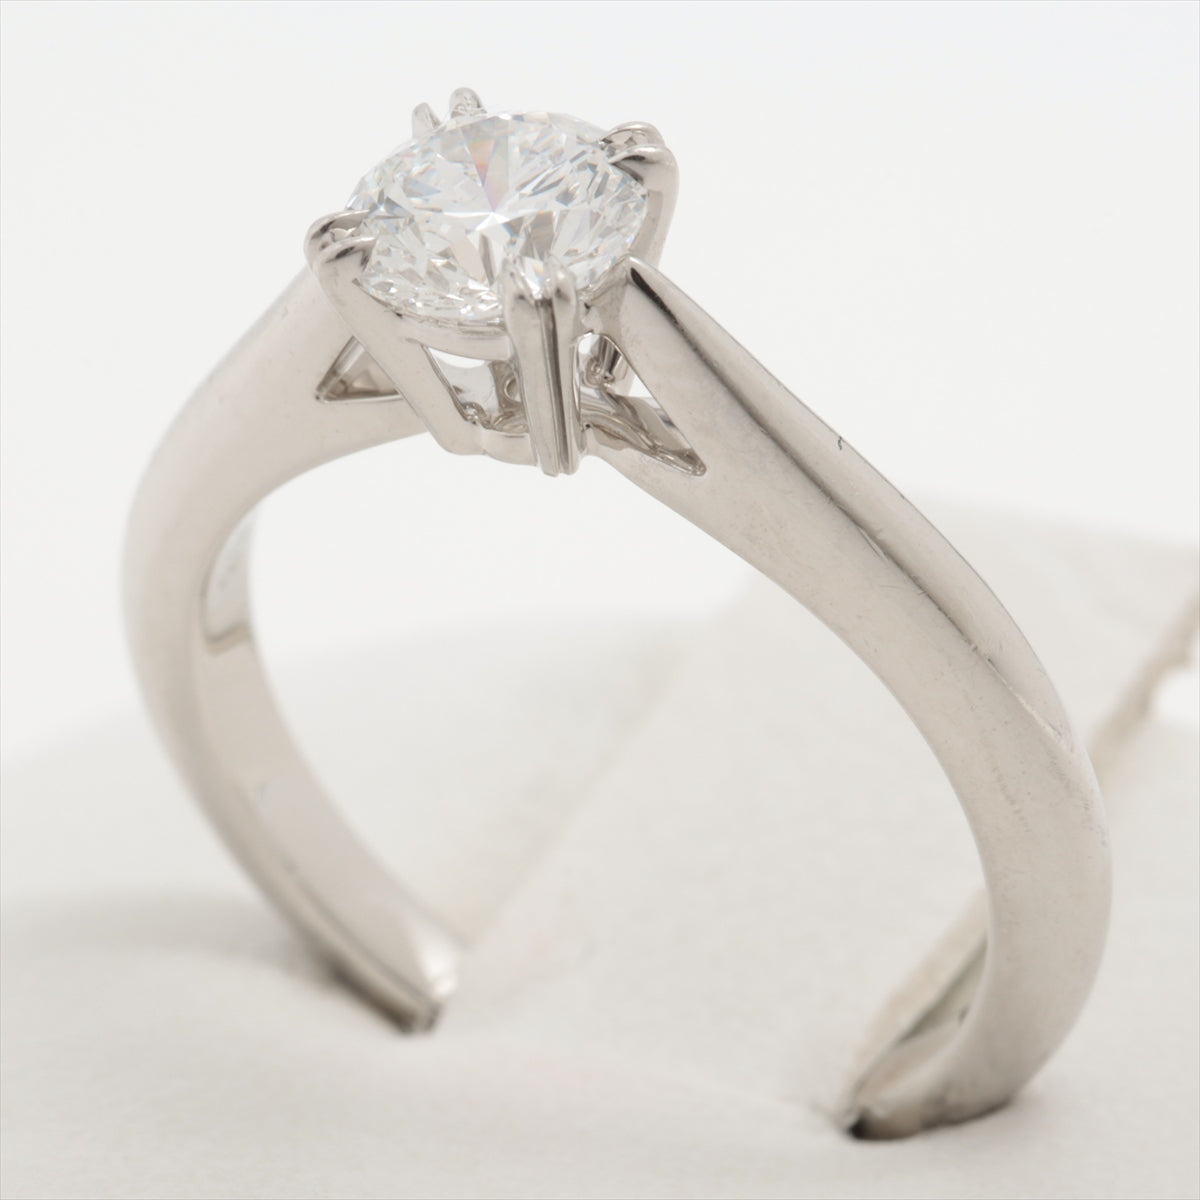 Harry Winston Solitaire Diamond Ring Pt950 4.2g 0.55 D VS1 3EX NONE RGDPRD005NSS-045oladh